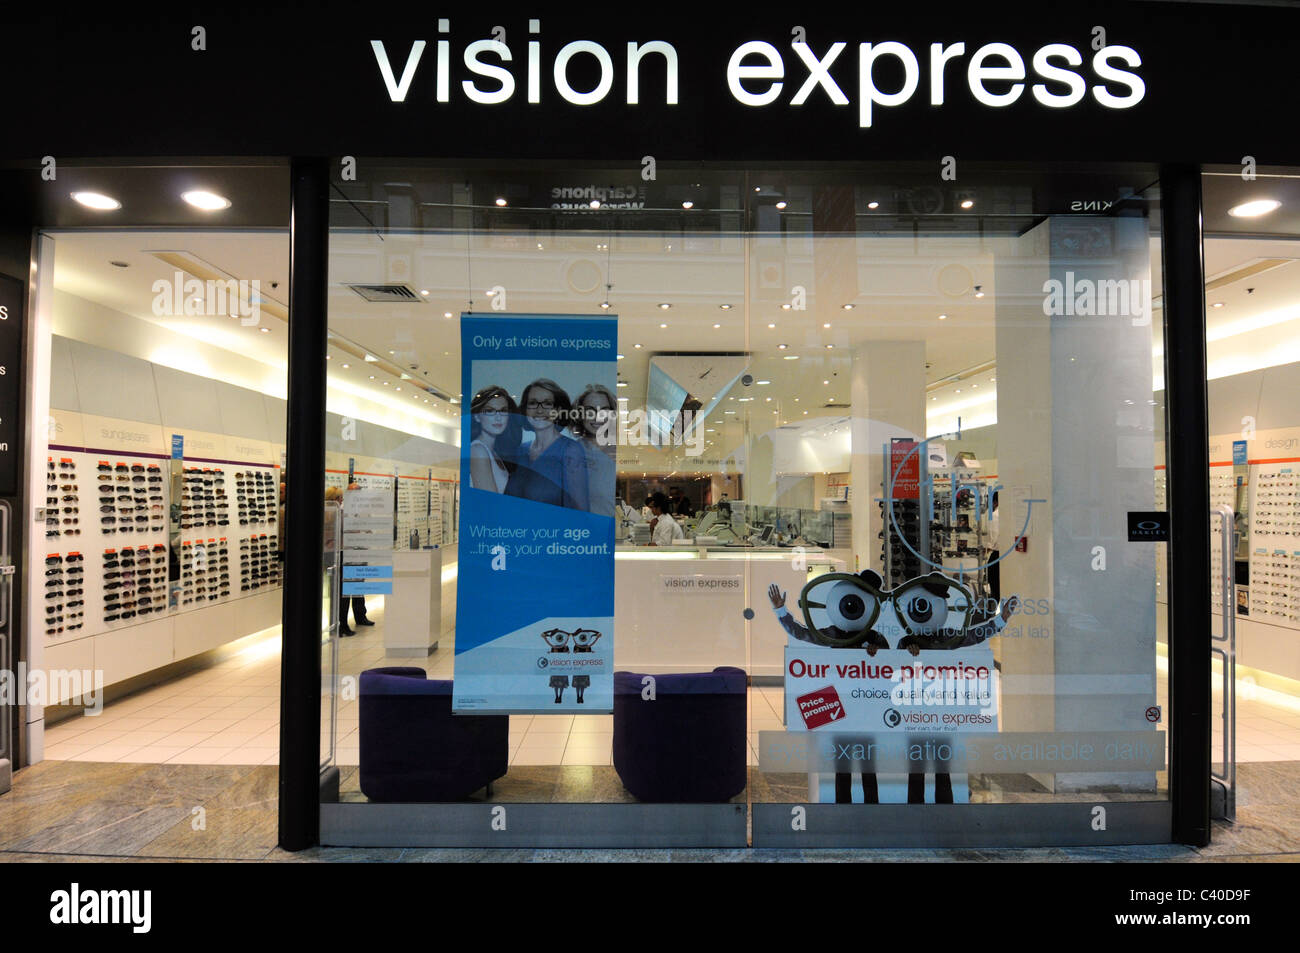 Lunettes lunettes de vision express yeux oeil Banque D'Images